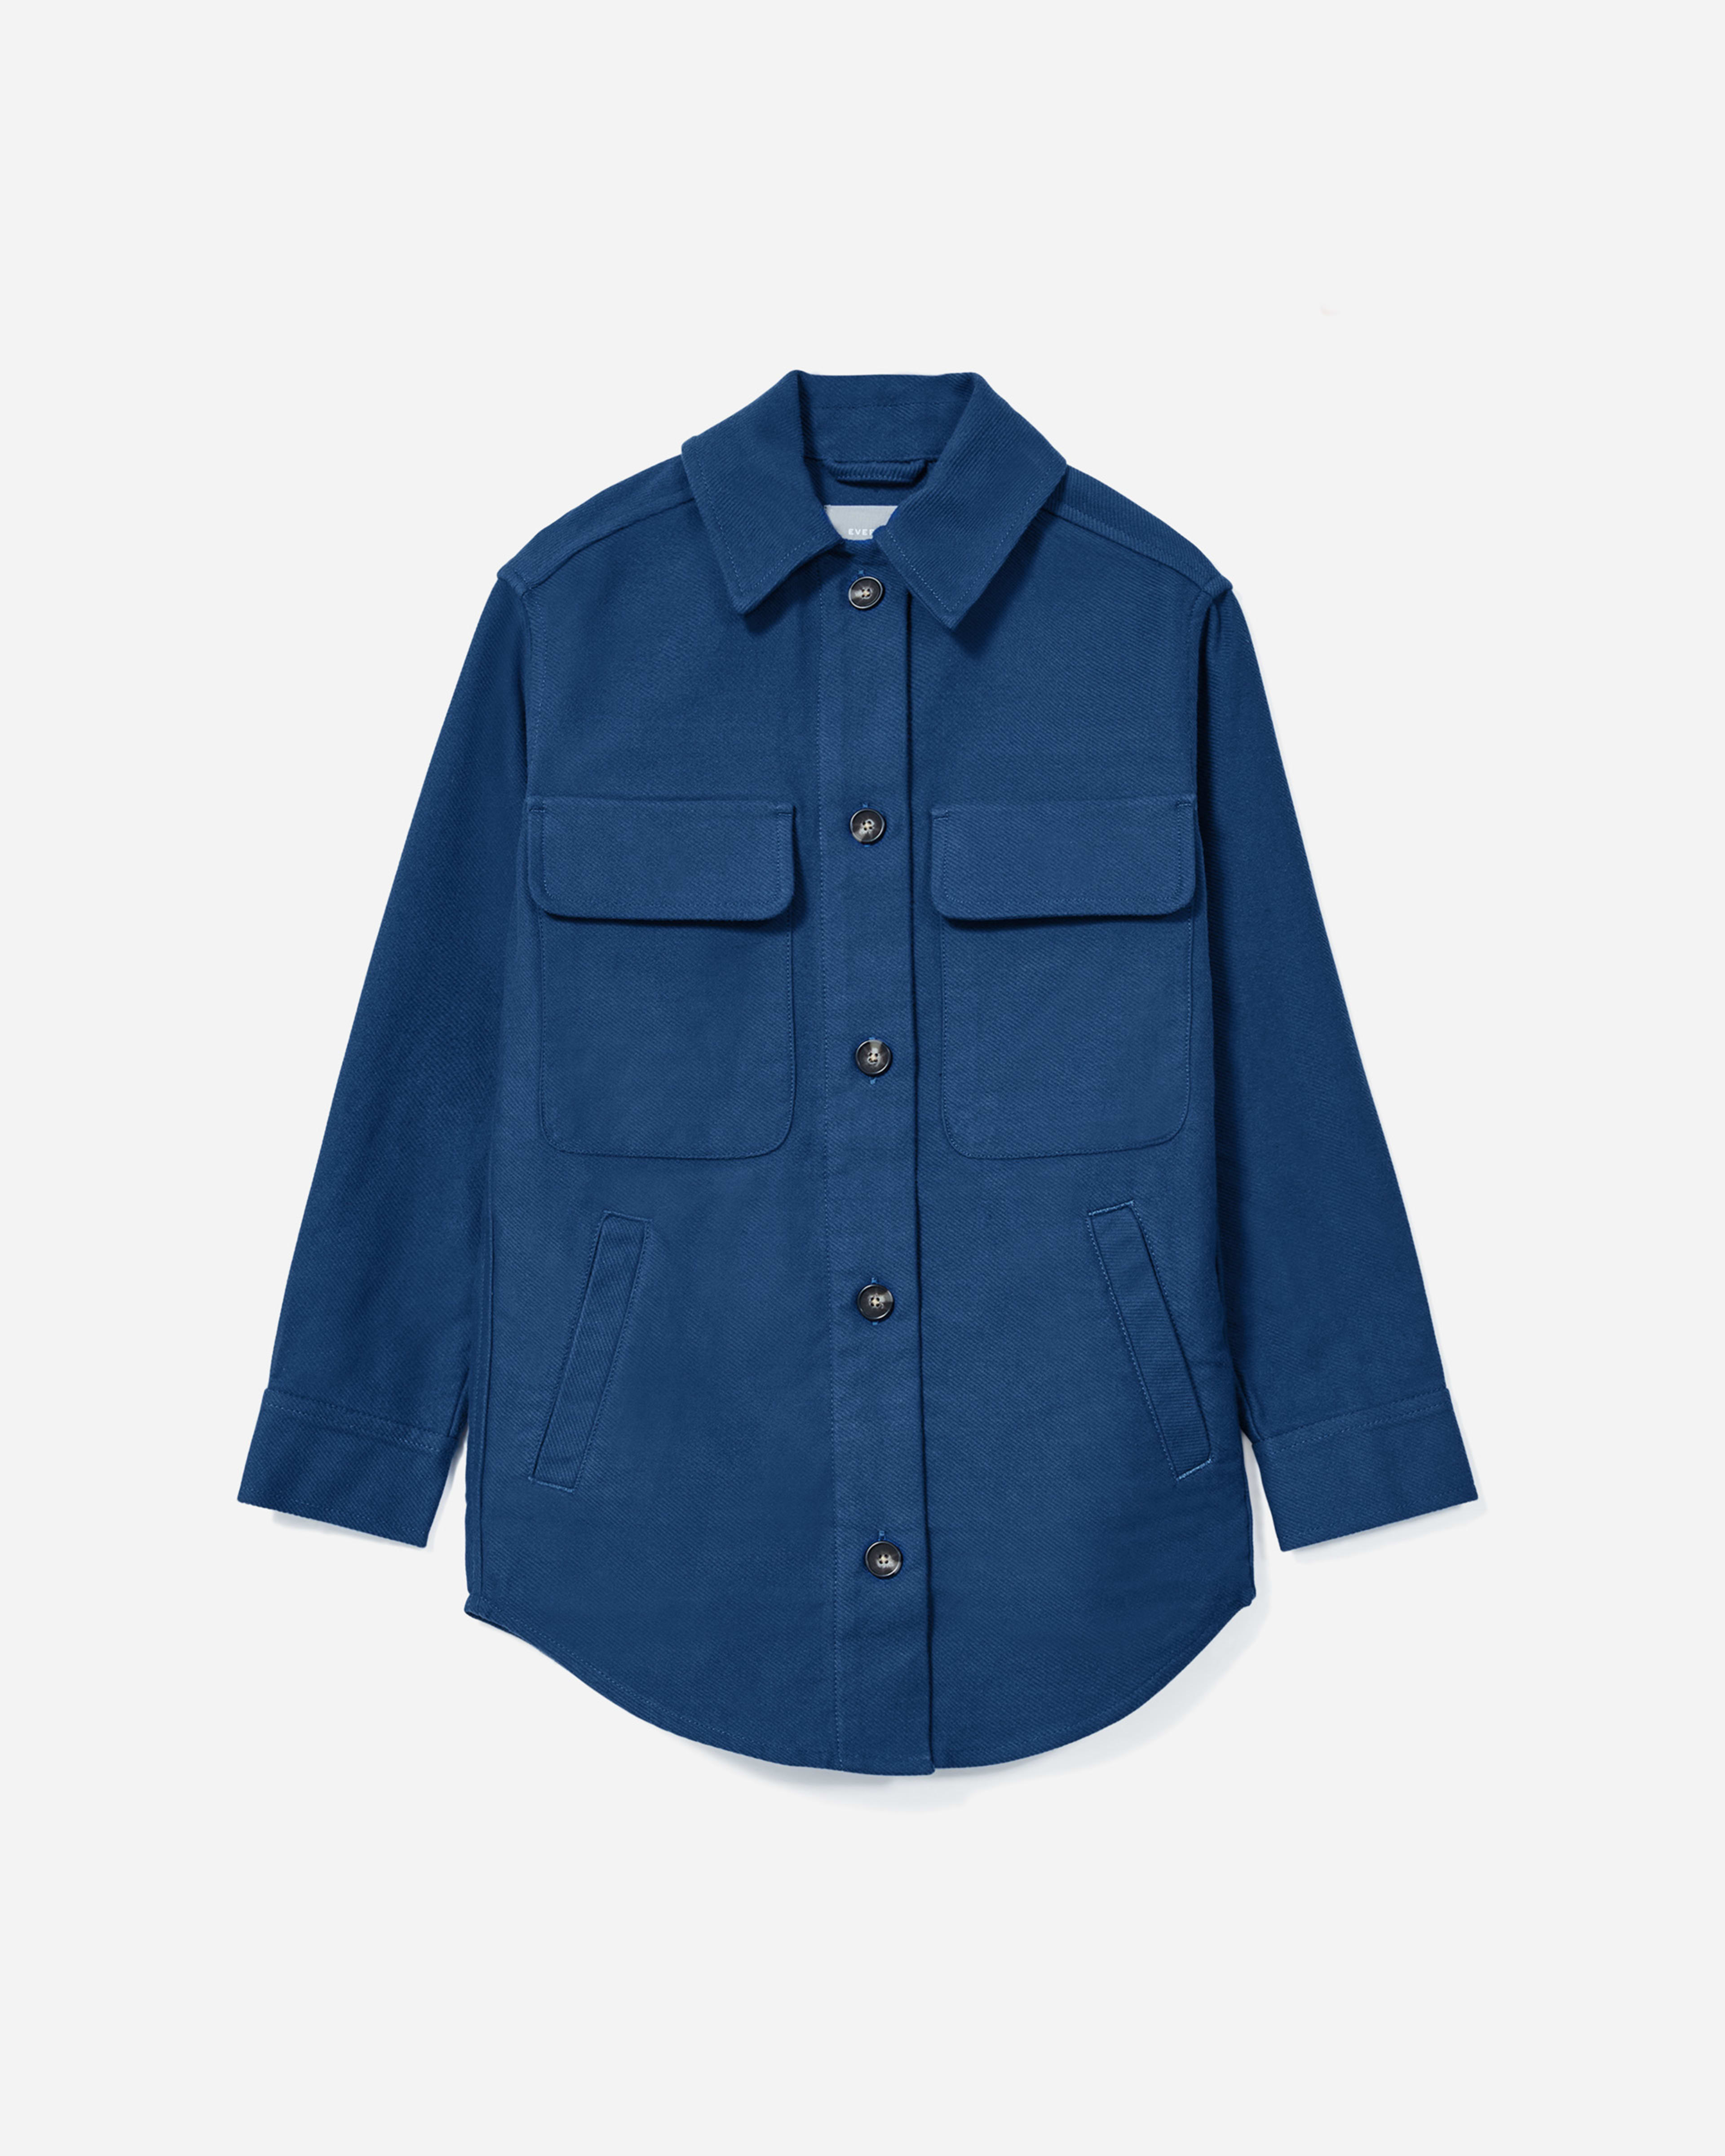 The Oversized Shirt Jacket Deep Blue – Everlane